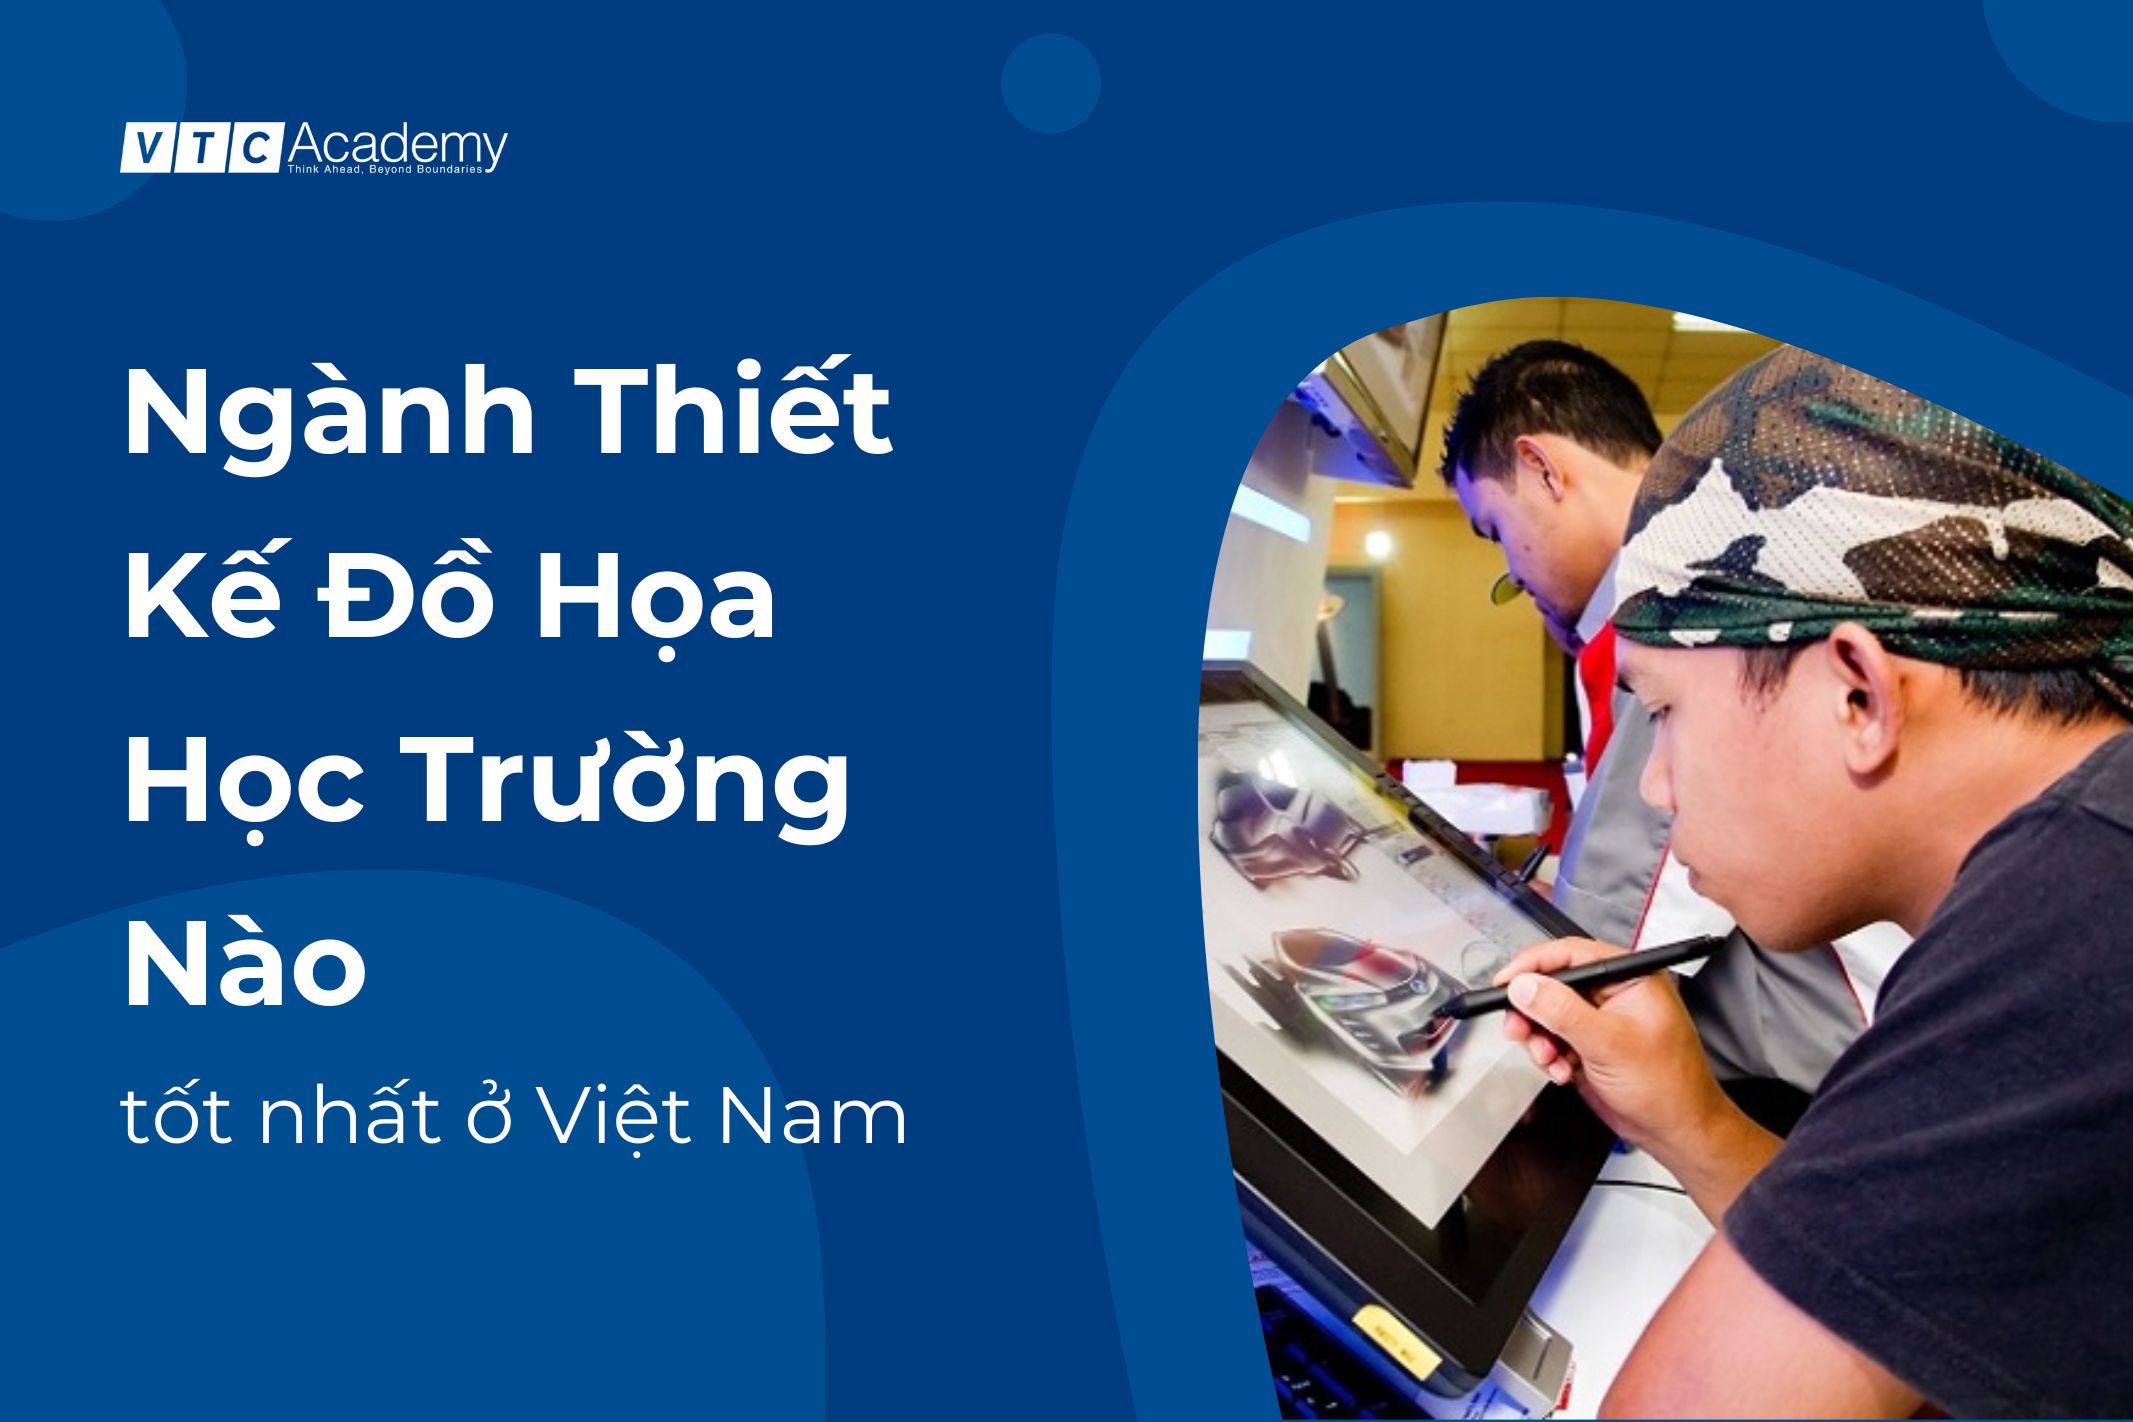 Top 11 trường dạy thiết kế đồ họa tốt nhất ở TPHCM, Hà Nội